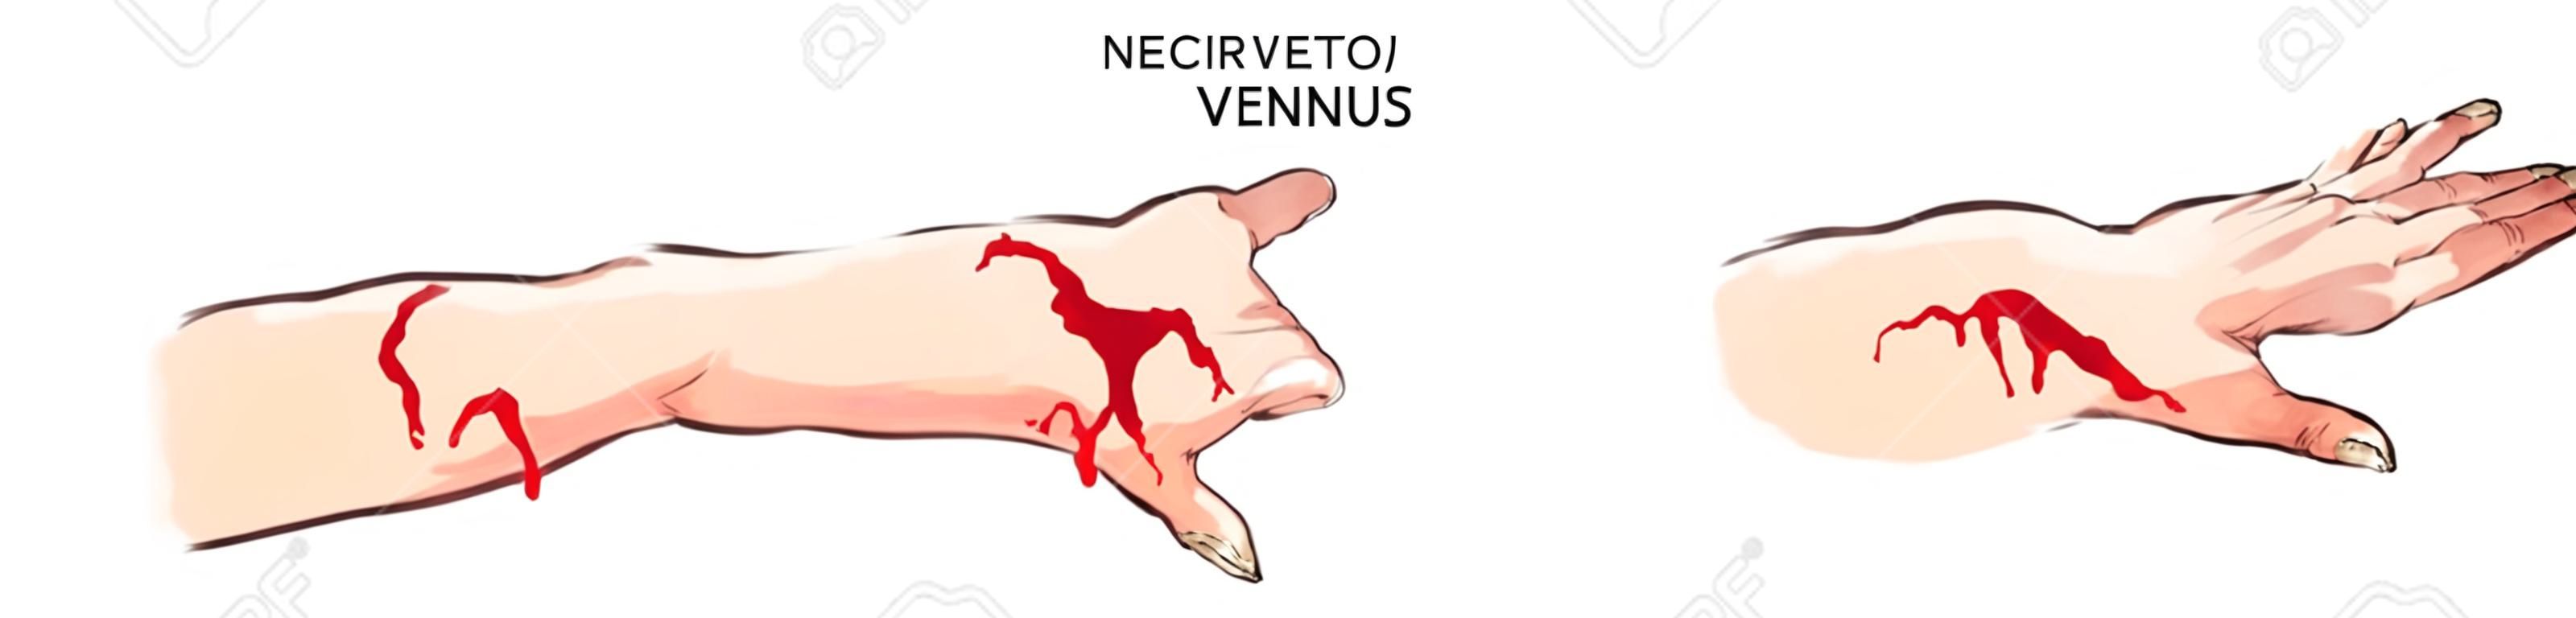 ilustración vectorial de un arterial y hemorragia venosa